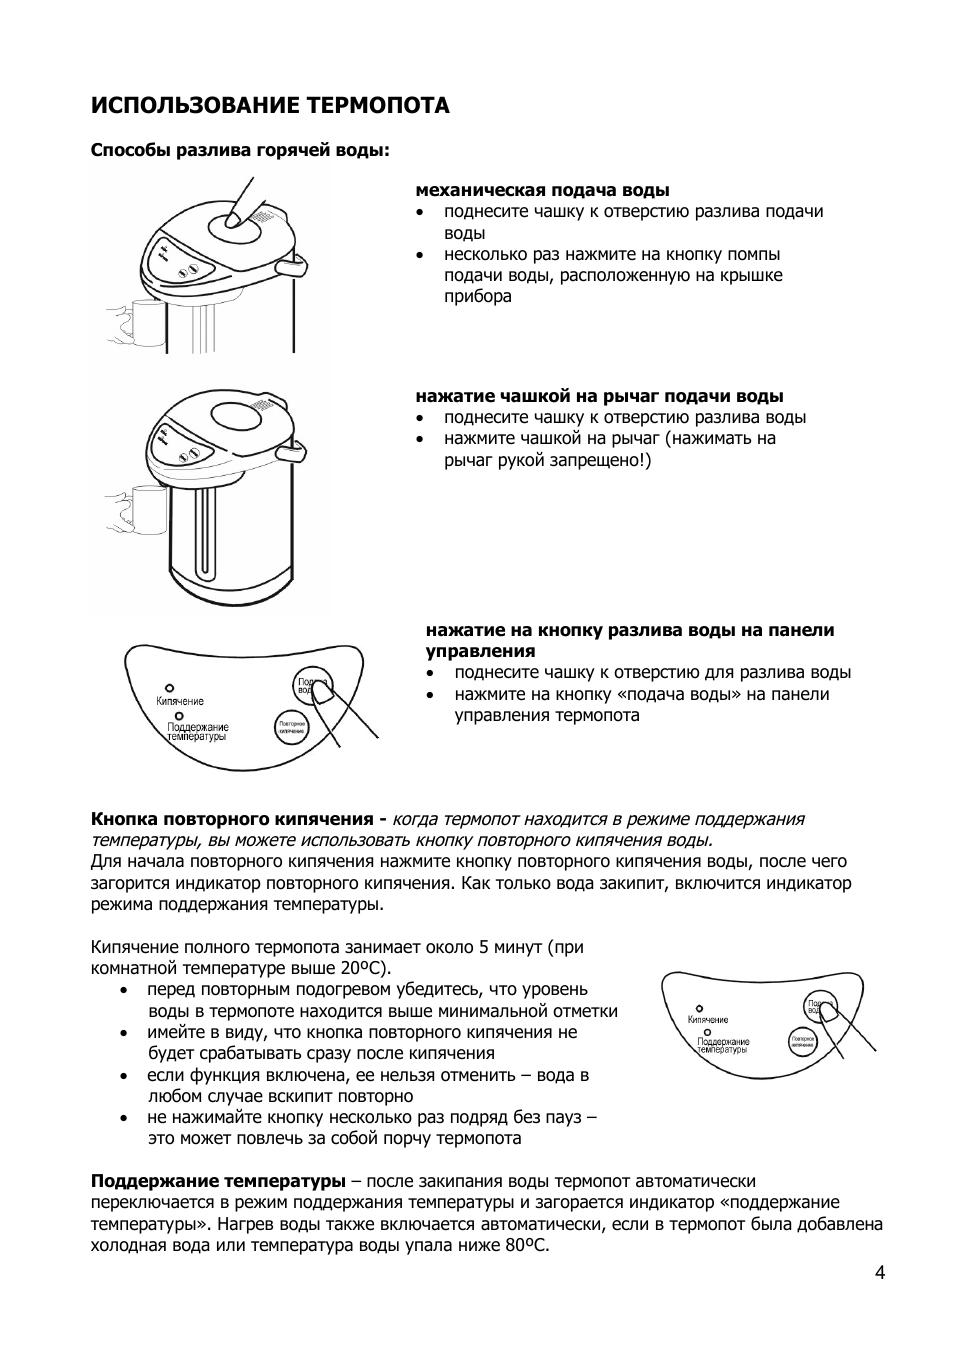 Как очистить термопот от накипи в домашних условиях: убрать налет народными средствами, удалить отложения бытовой химией?